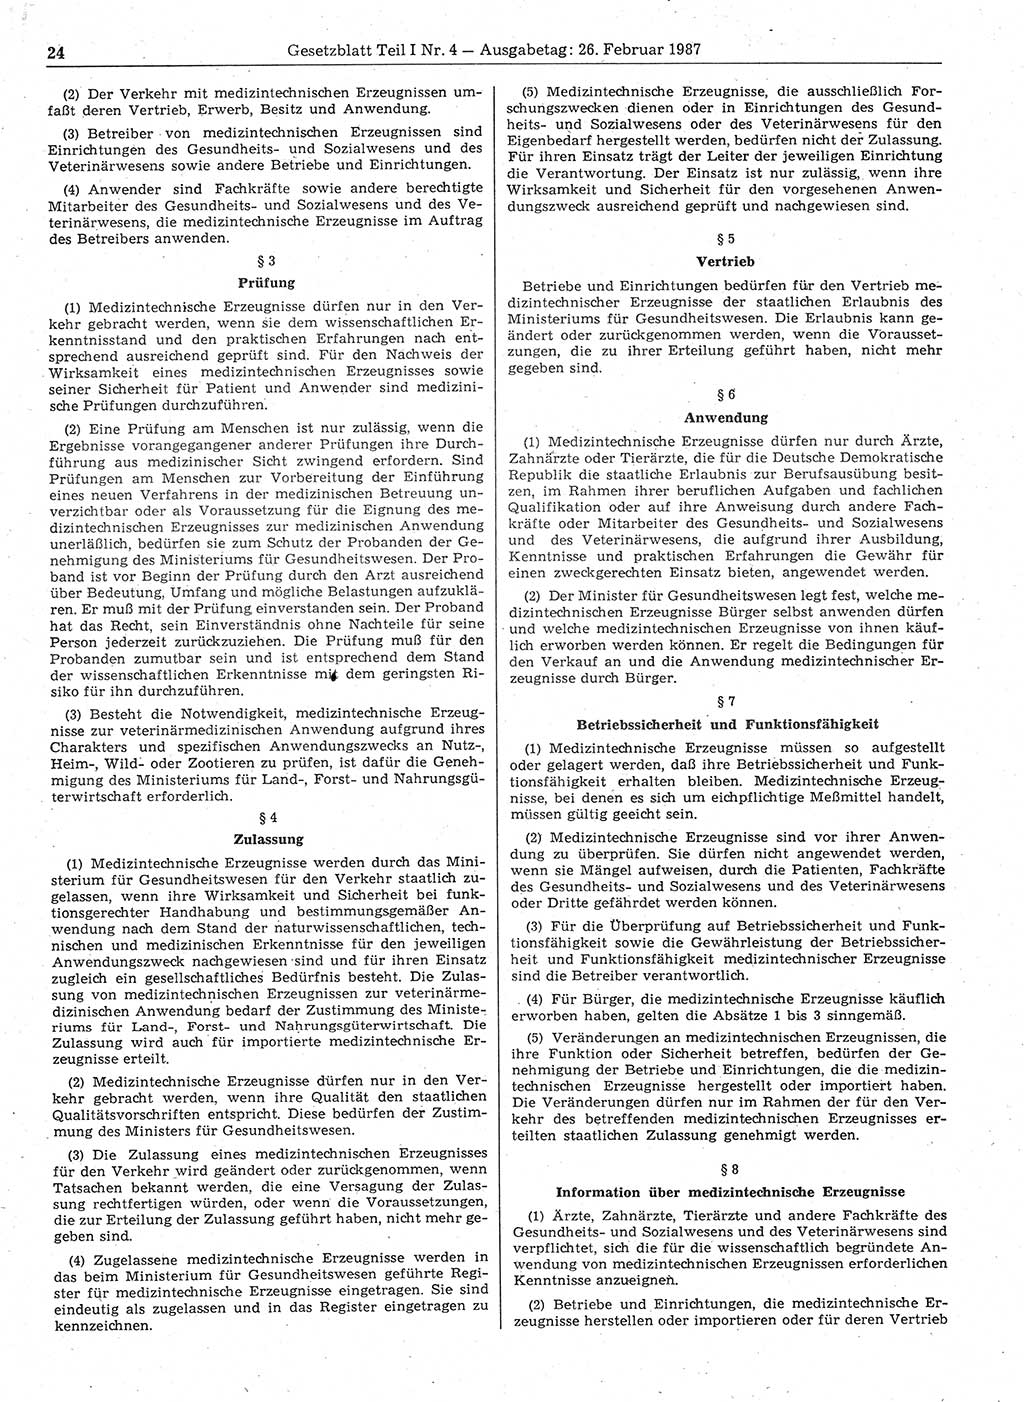 Gesetzblatt (GBl.) der Deutschen Demokratischen Republik (DDR) Teil Ⅰ 1987, Seite 24 (GBl. DDR Ⅰ 1987, S. 24)